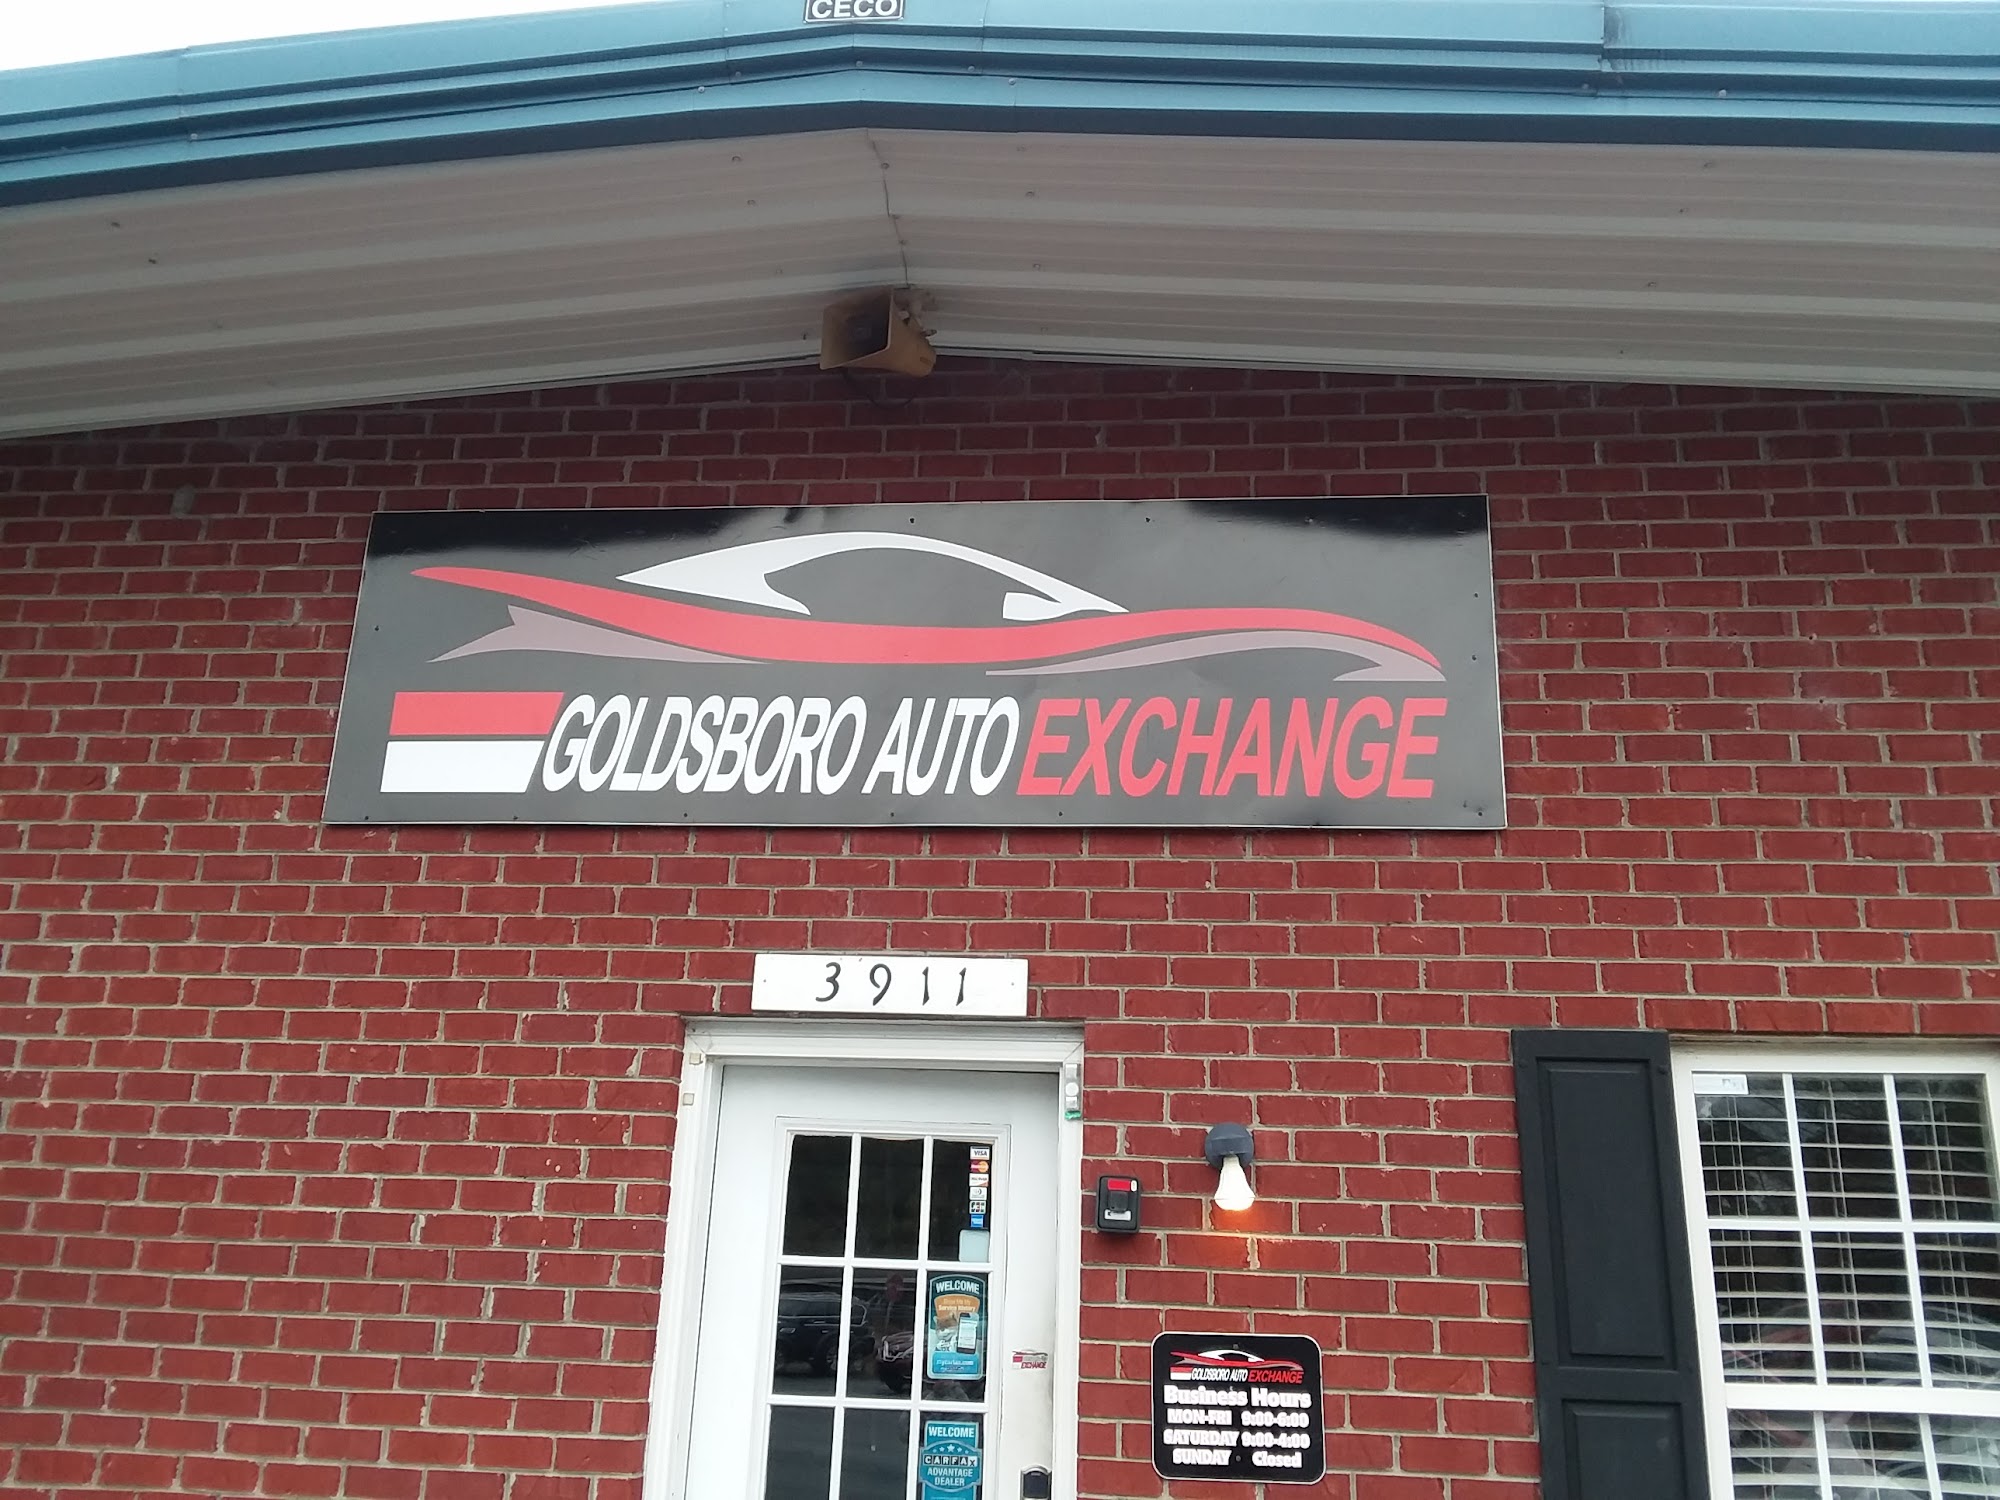 Goldsboro Auto Exchange